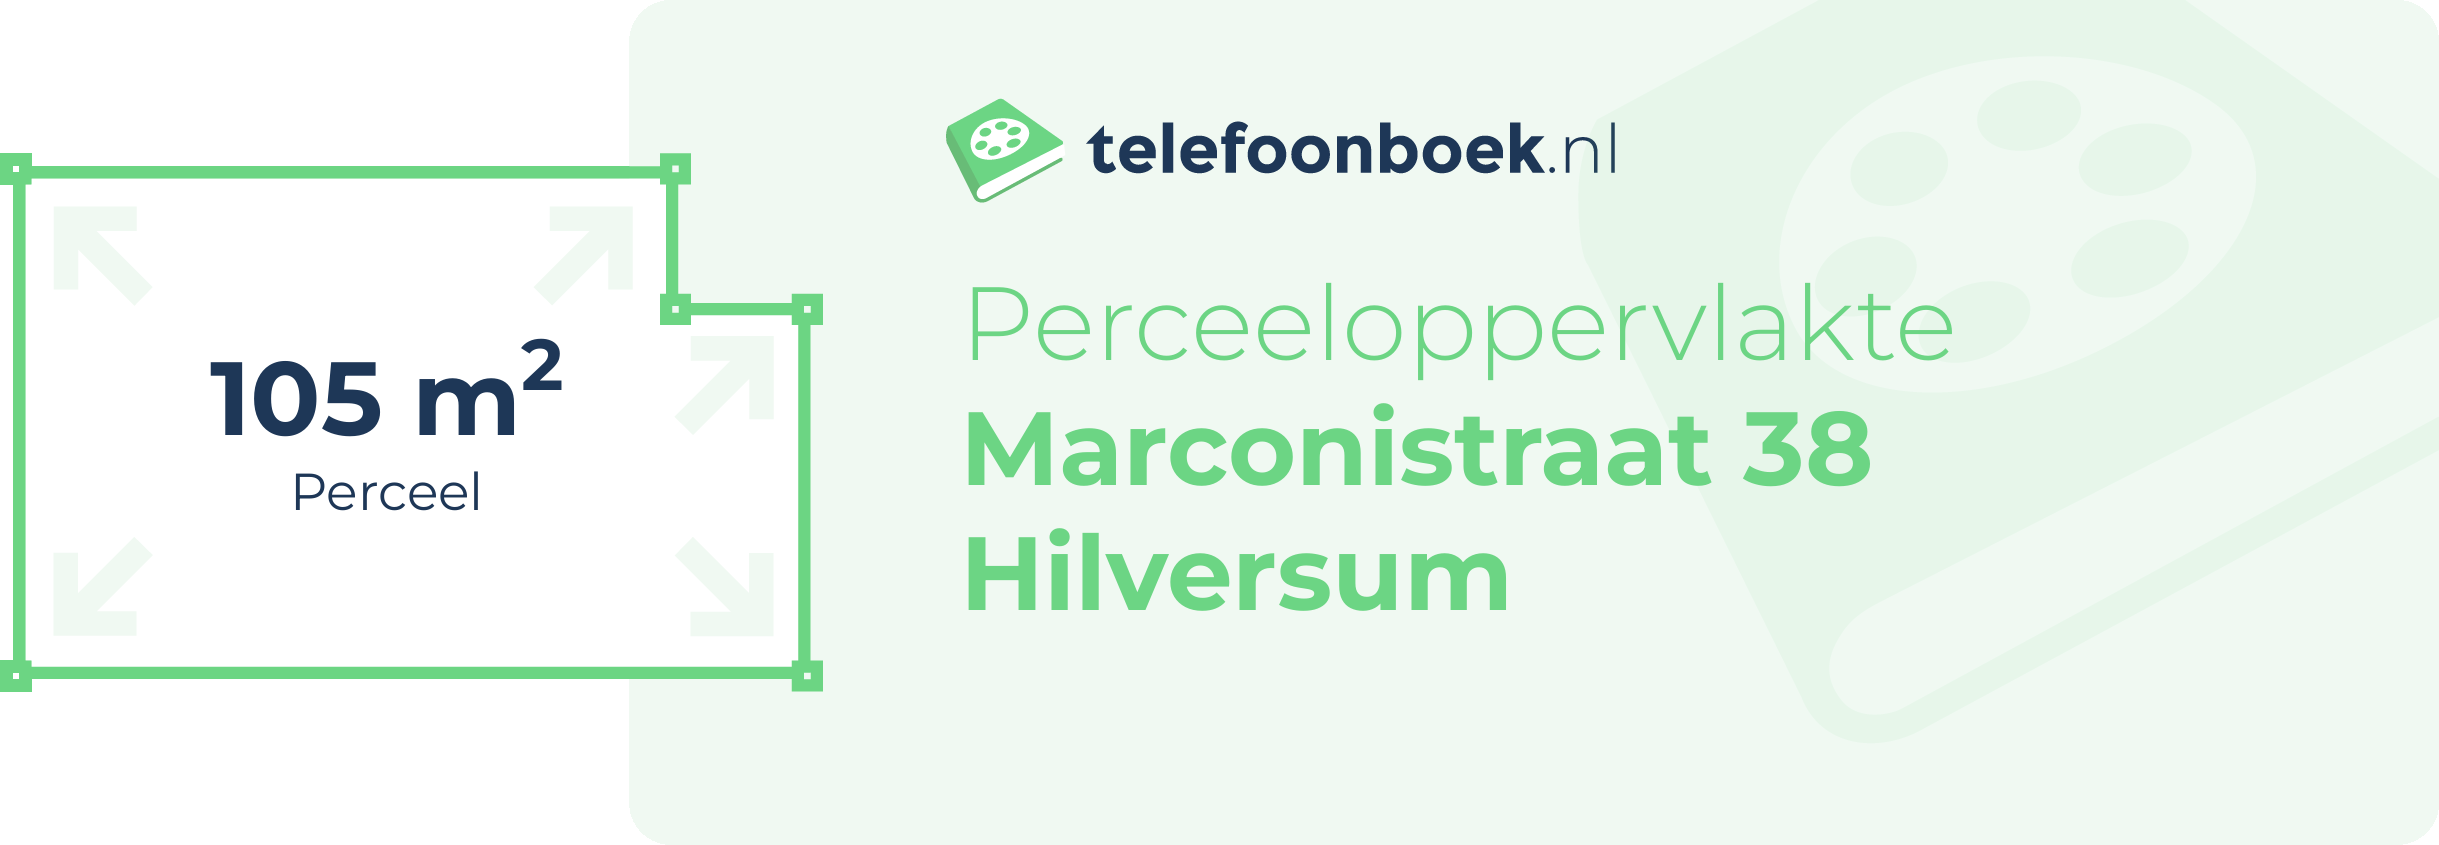 Perceeloppervlakte Marconistraat 38 Hilversum